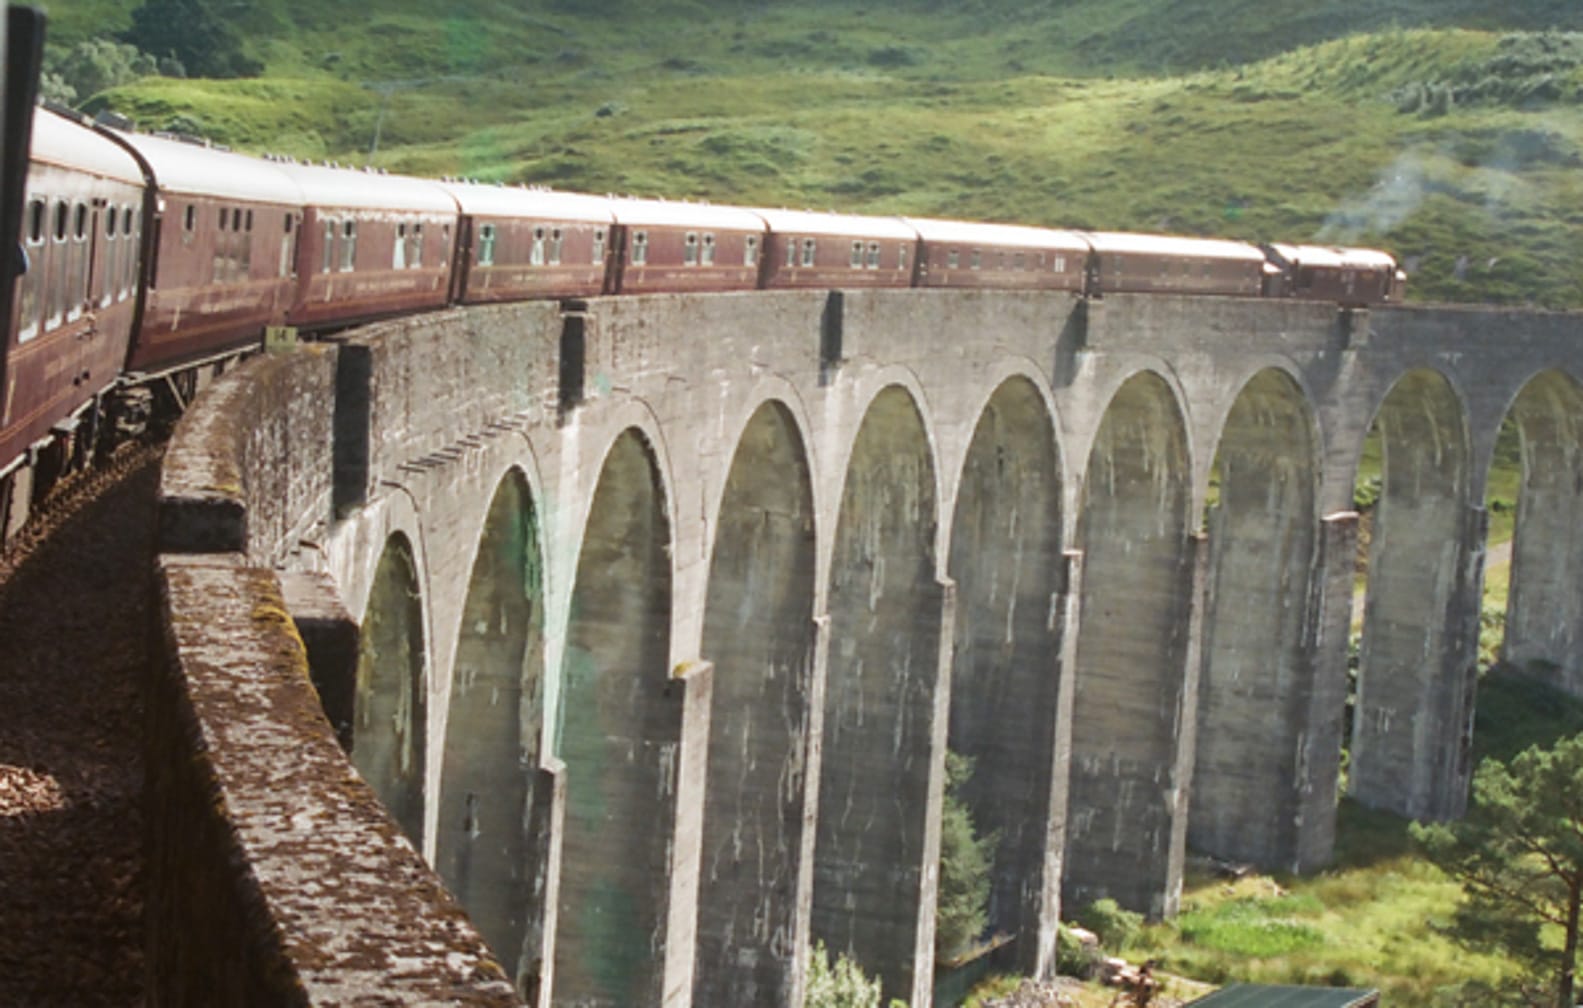 Train going across bridge on the Grand Taste of the Highlands journey